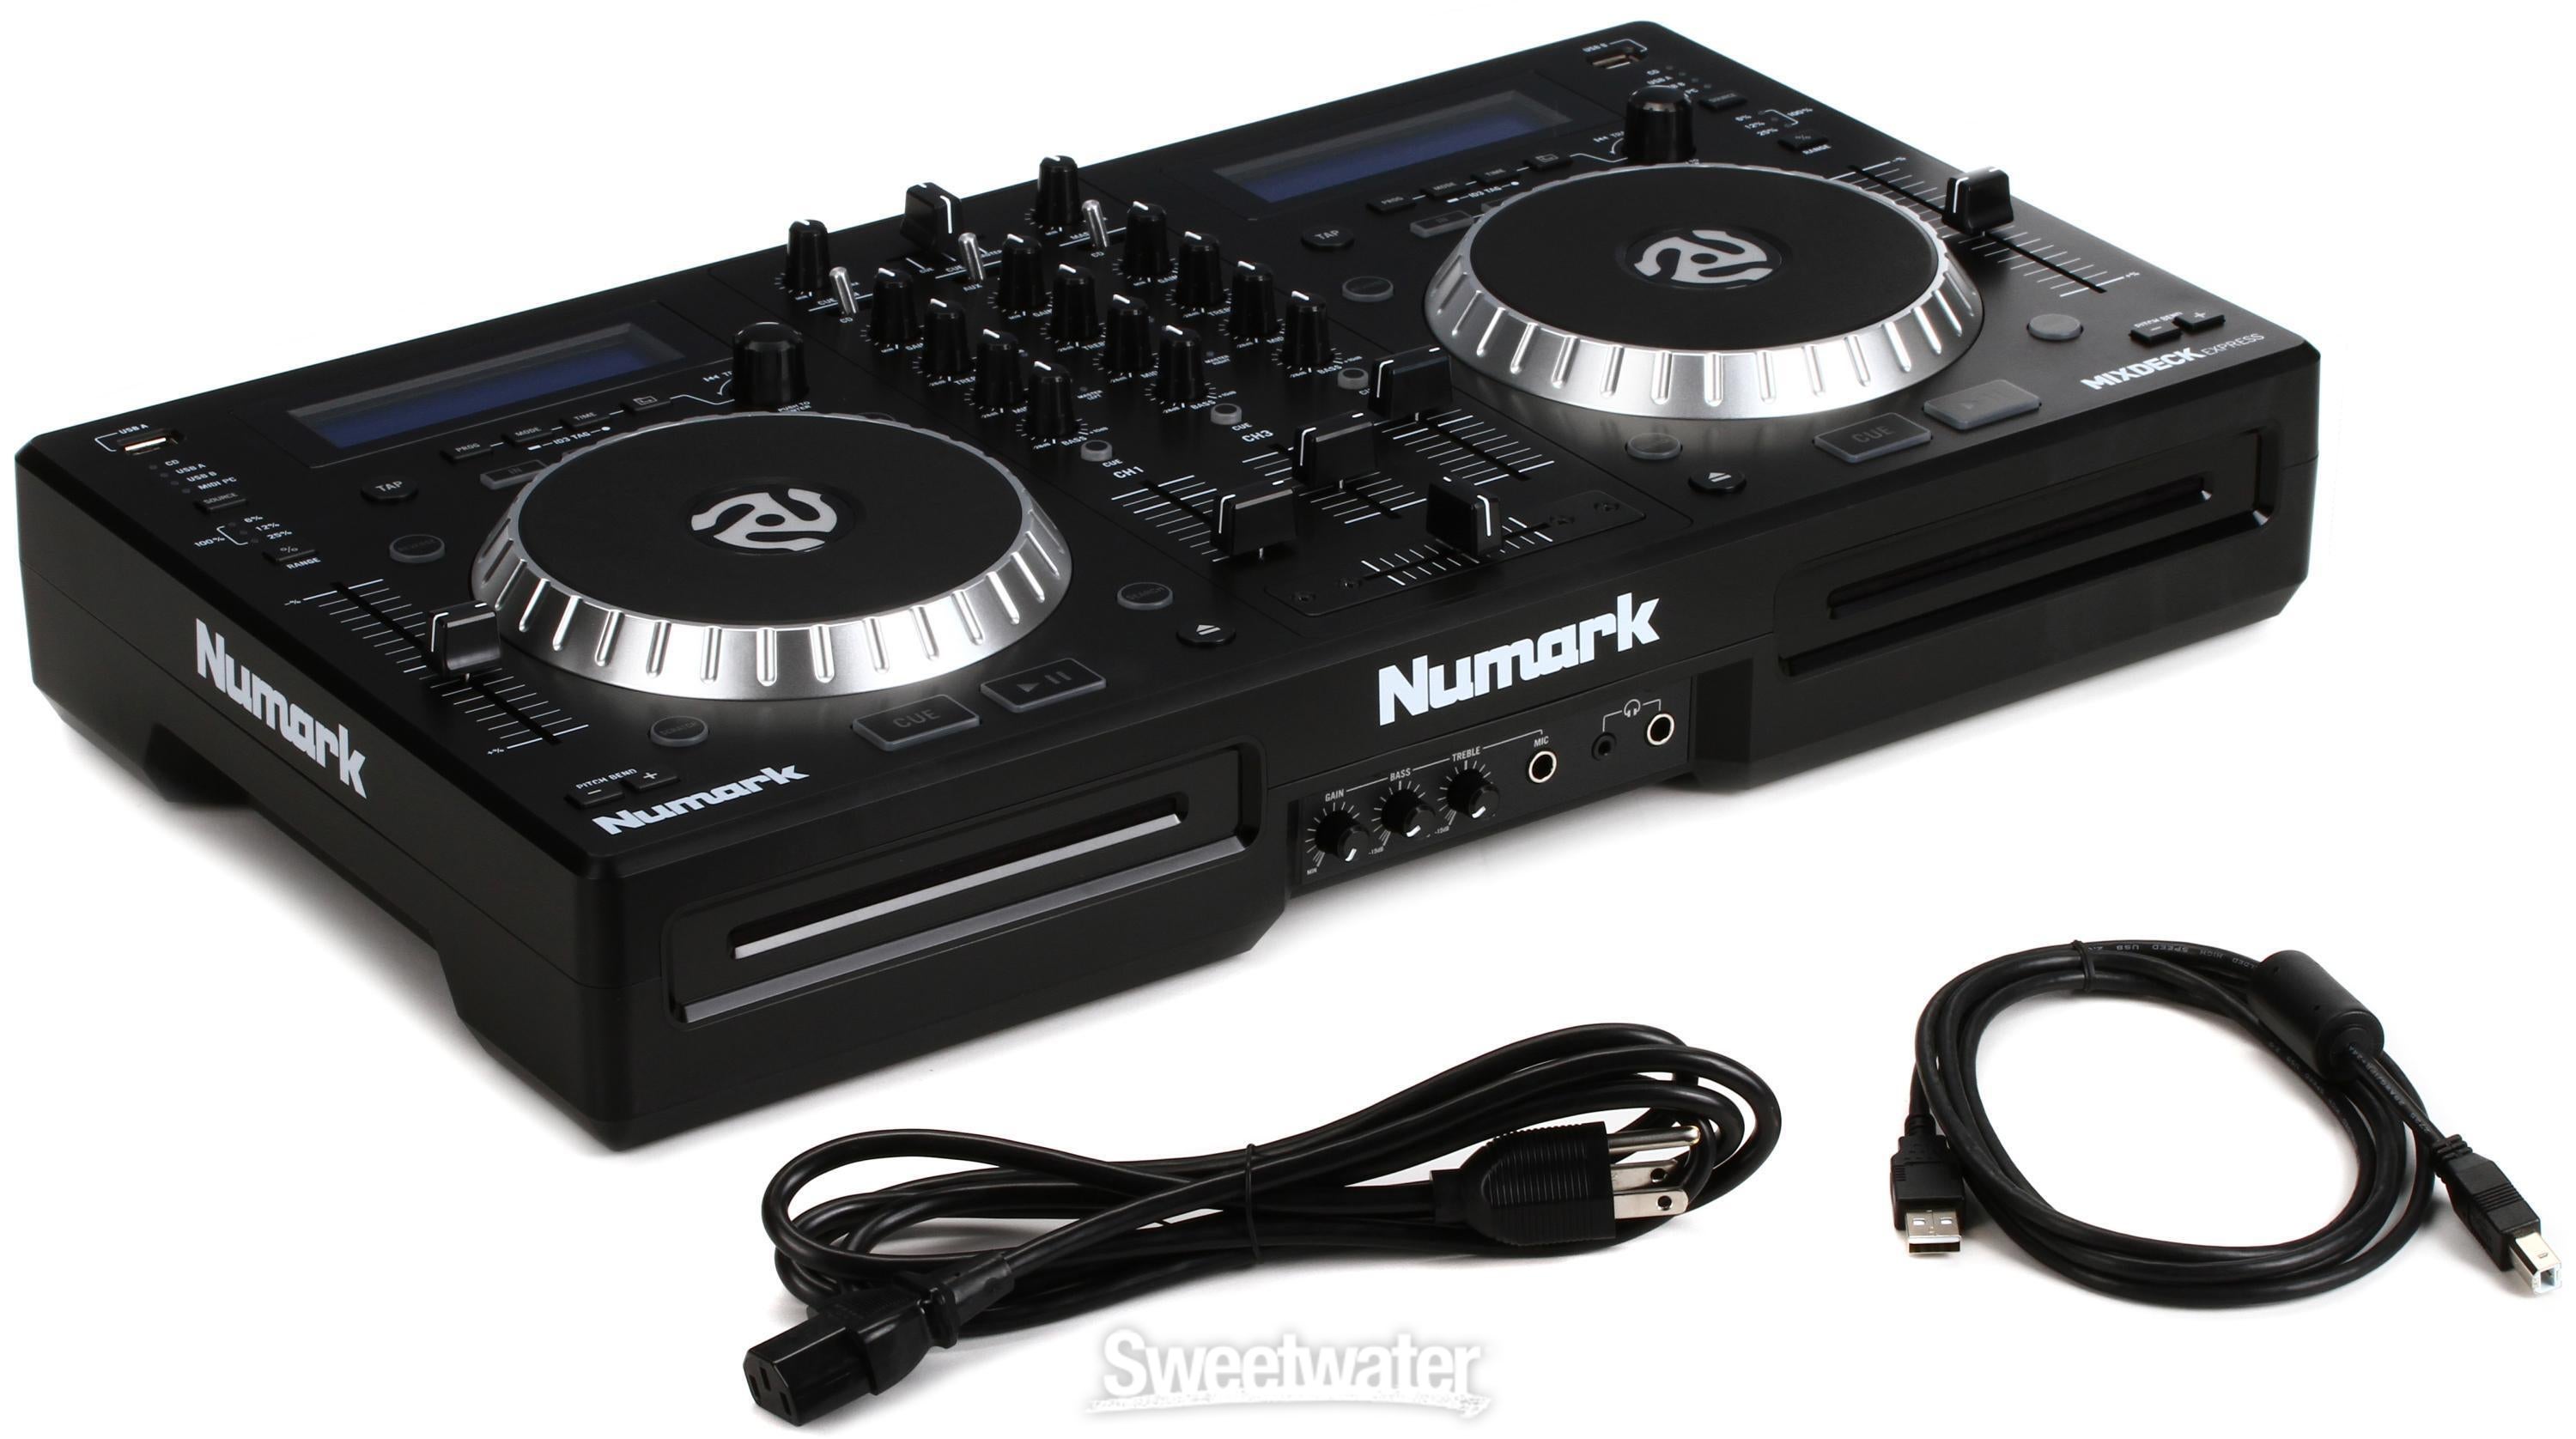 Numark Mixdeck Express DJ Controller with Dual CD and USB Playback